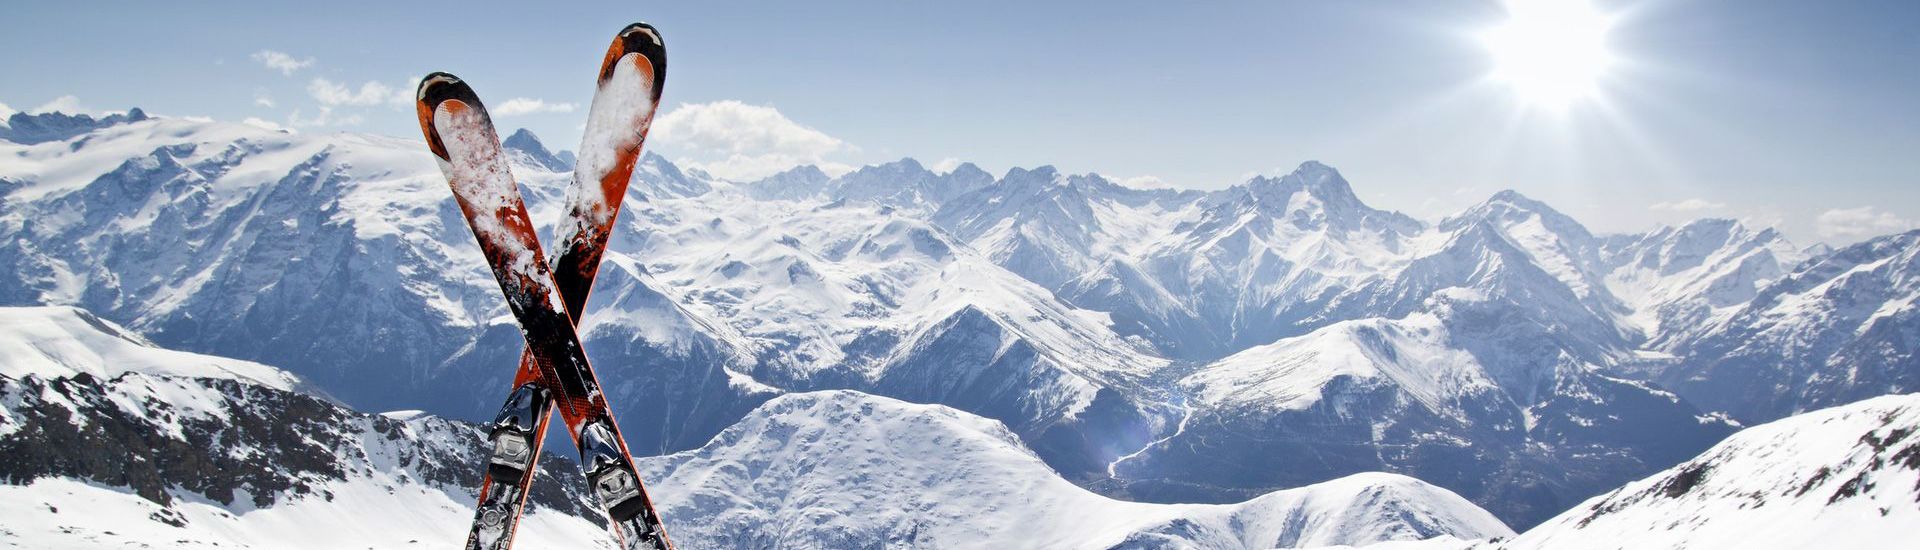 Vacances au ski dans les hautes alpes